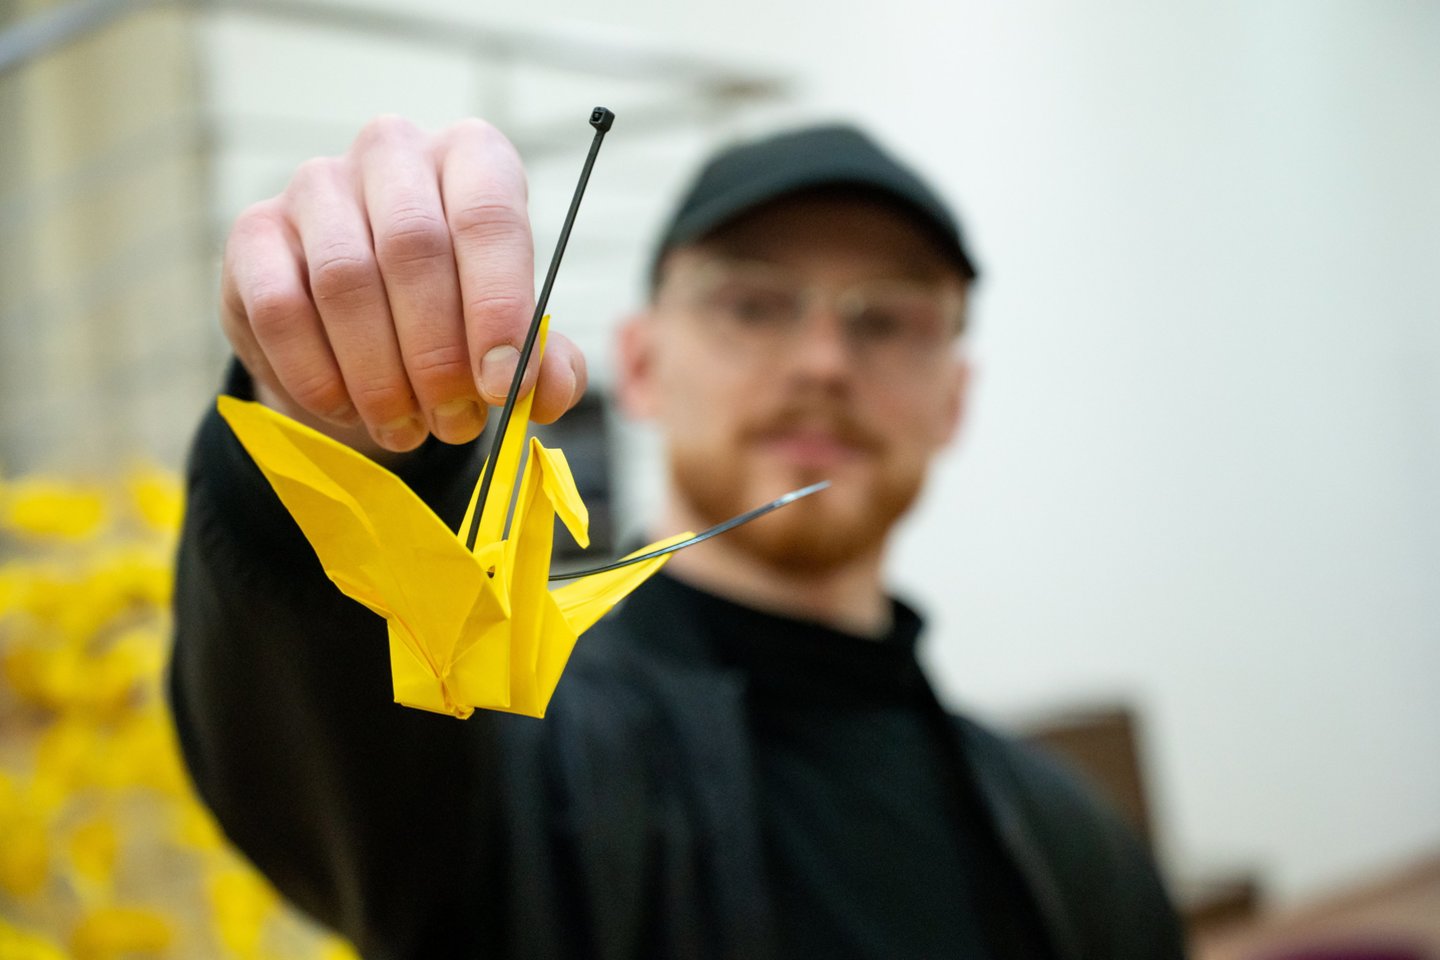 Daugiau kaip 3 tūkstančiai vaikų rankomis išlankstytų mėlynų ir geltonų origamio gervelių „nutūpė“ į bendrą kūrinį „Laisvės sparnai“.